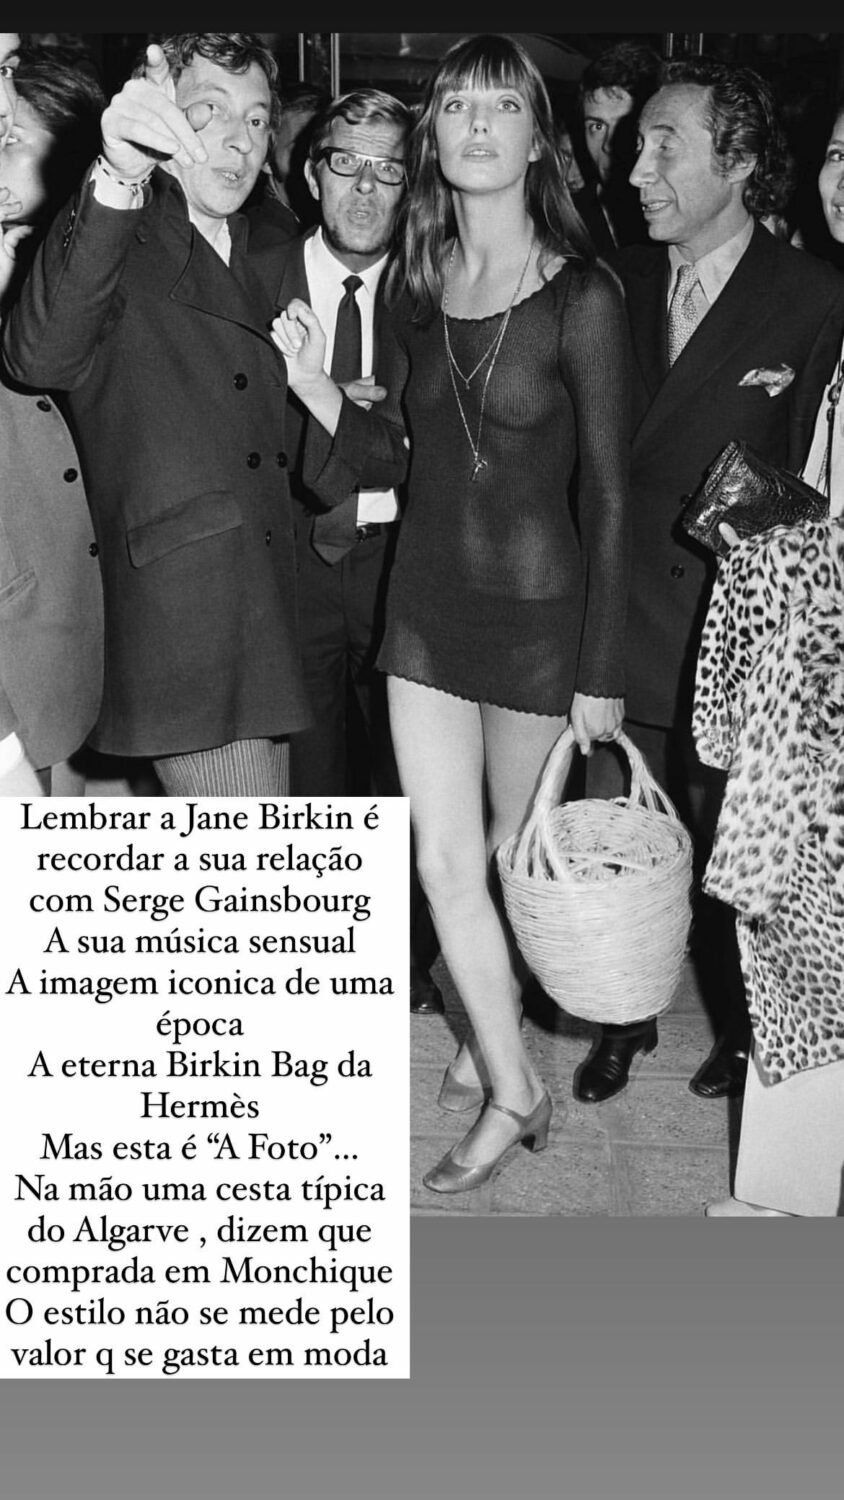 Ana Marques recorda Jane Birkin: Na mão uma cesta típica do Algarve…”